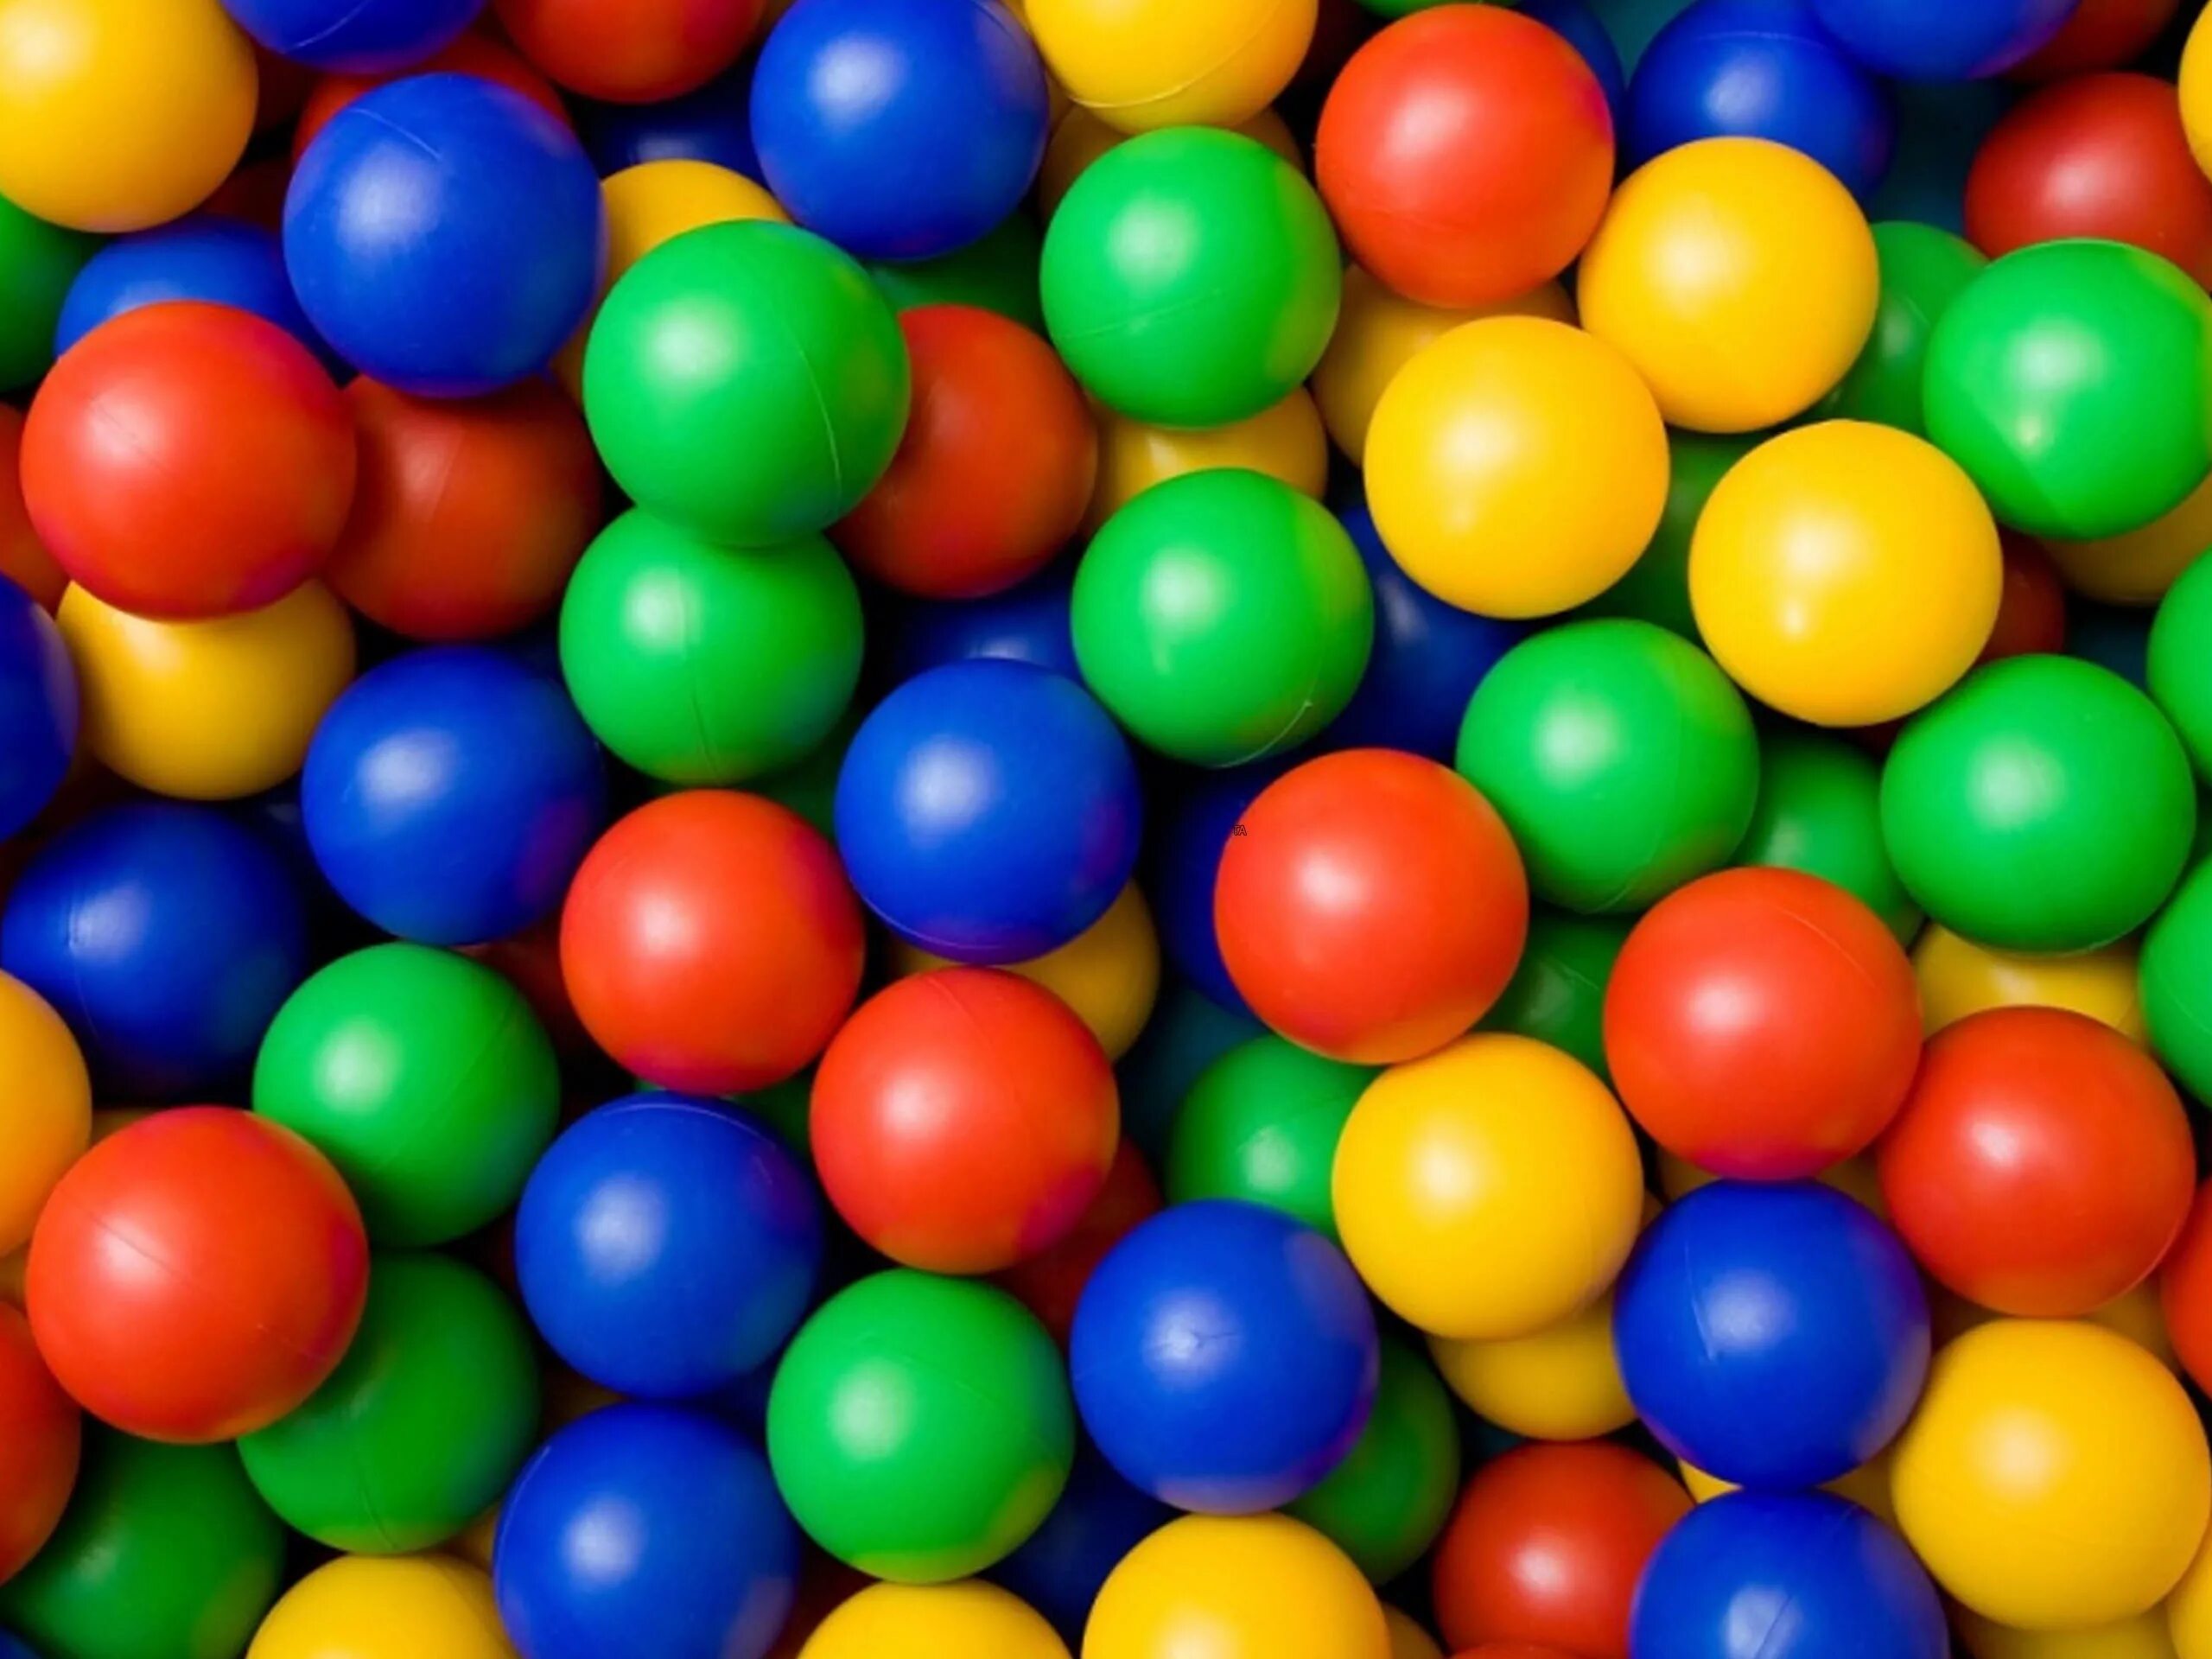 Цветной шар. Цветные шары. Пластмассовые разноцветные шарики. Разноцветный шар. Разноцветные шарики в бассейне.